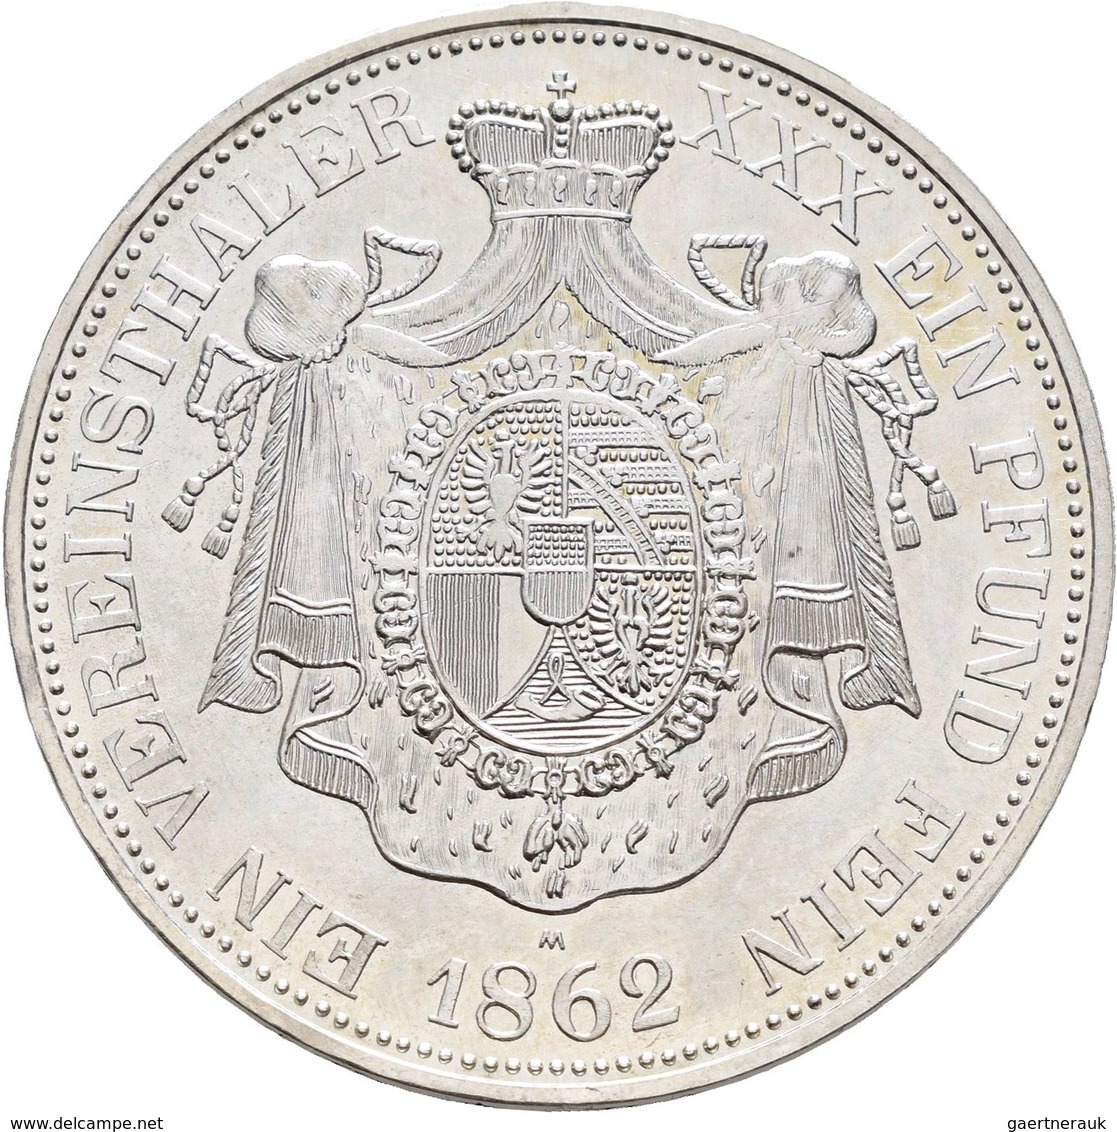 Liechtenstein: Lot 4 Stück; 10 Franken 1988, 1990, 2006, alle Polierte Platte sowie eine Nachprägung